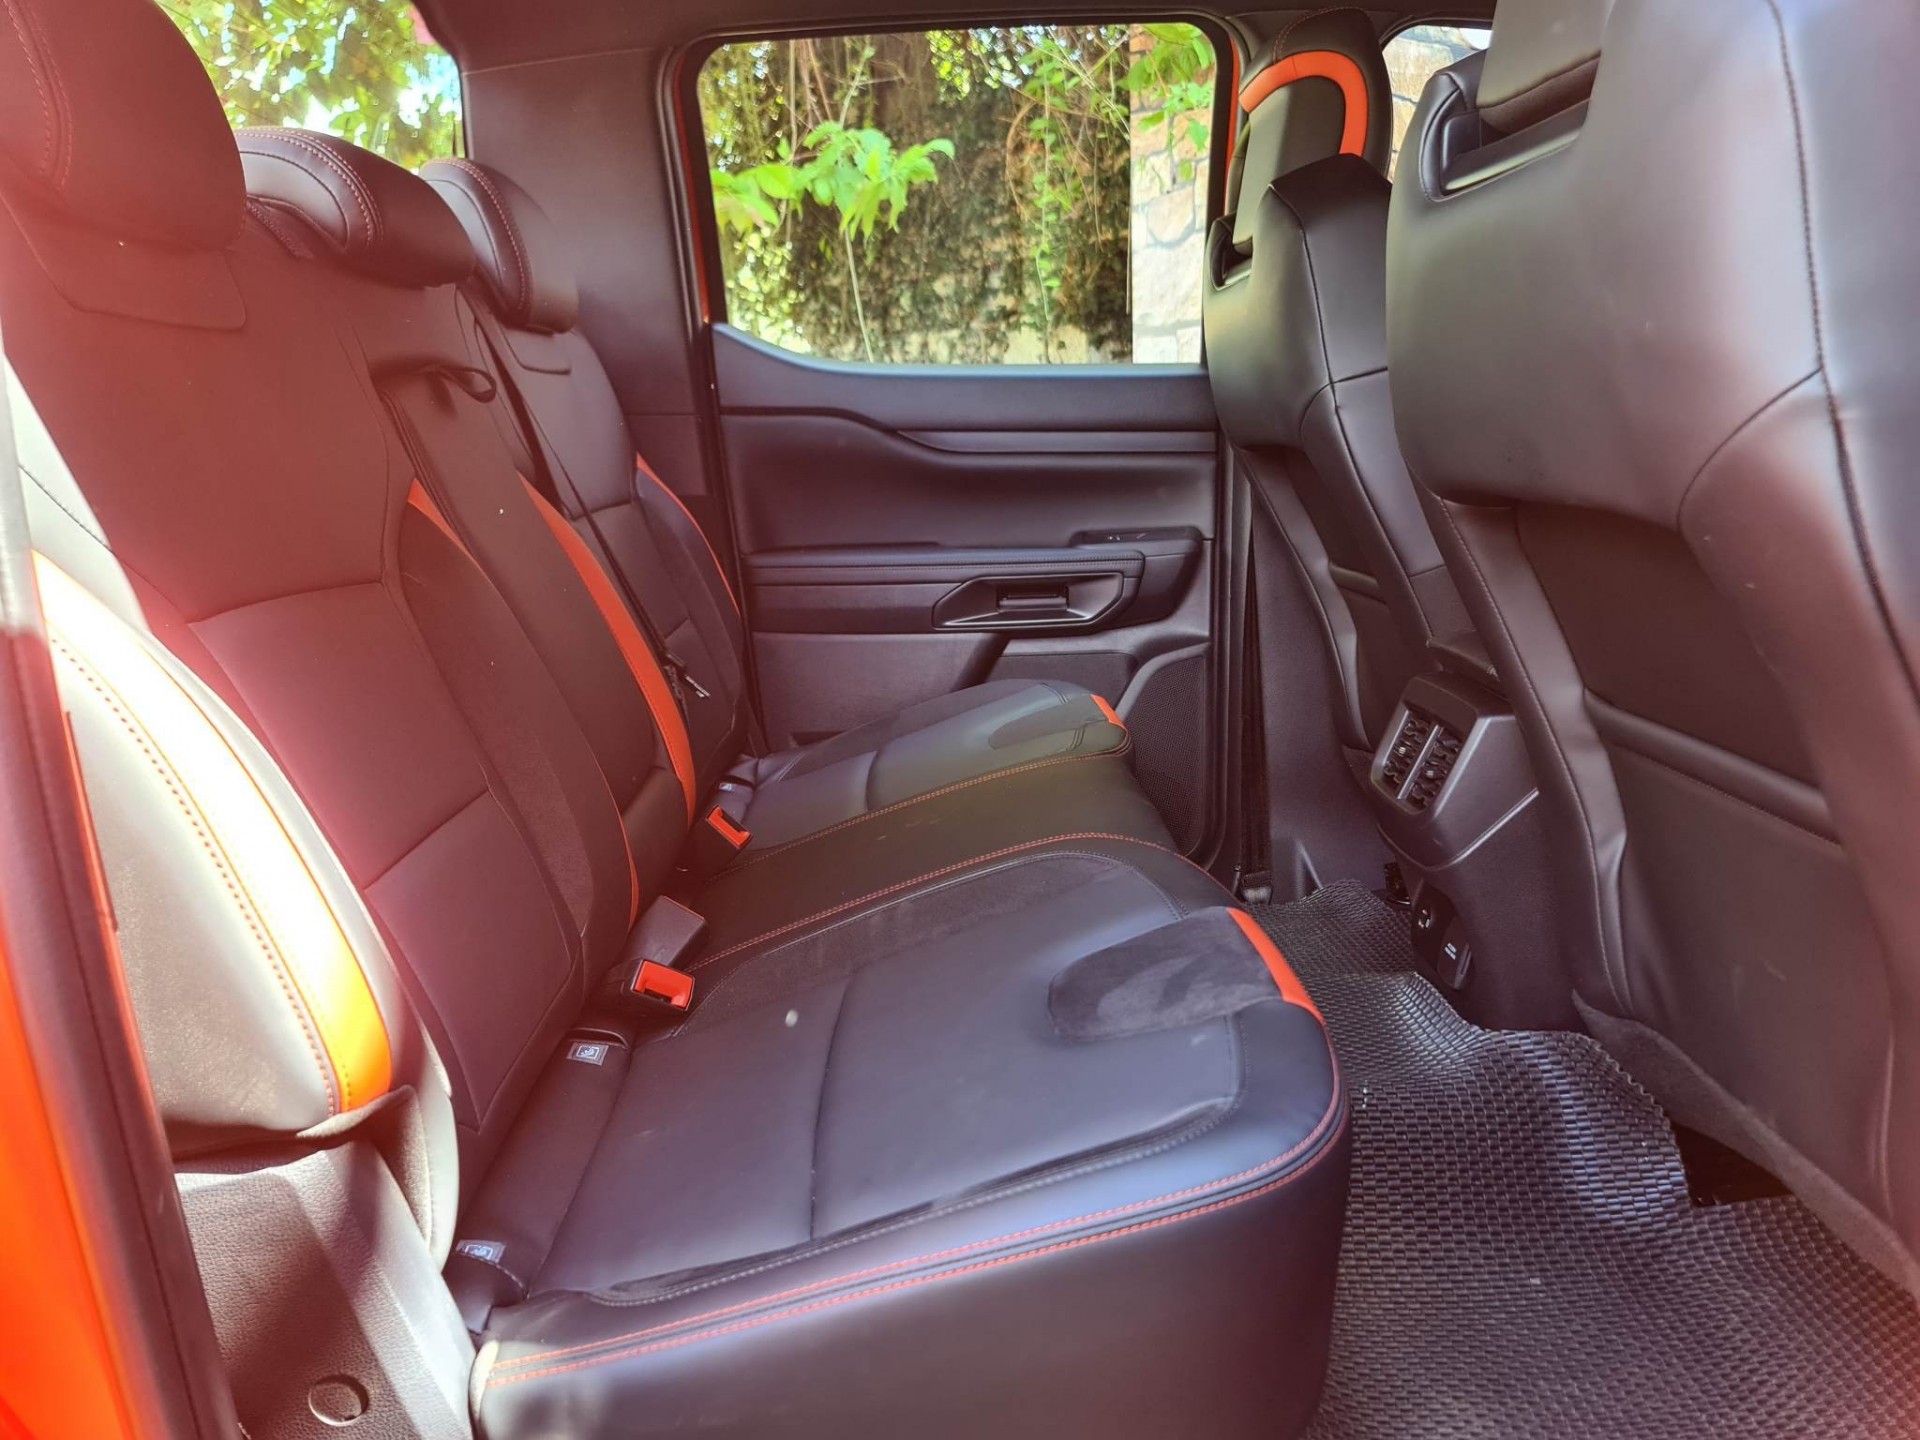 Hàng ghế thứ 2 trang bị đầy đủ tựa đầu 3 vị trí cùng tựa tay tích hợp hộc đựng cốc tiện dụng, đi kèm 2 ổ cắm điện 230V và 12V.